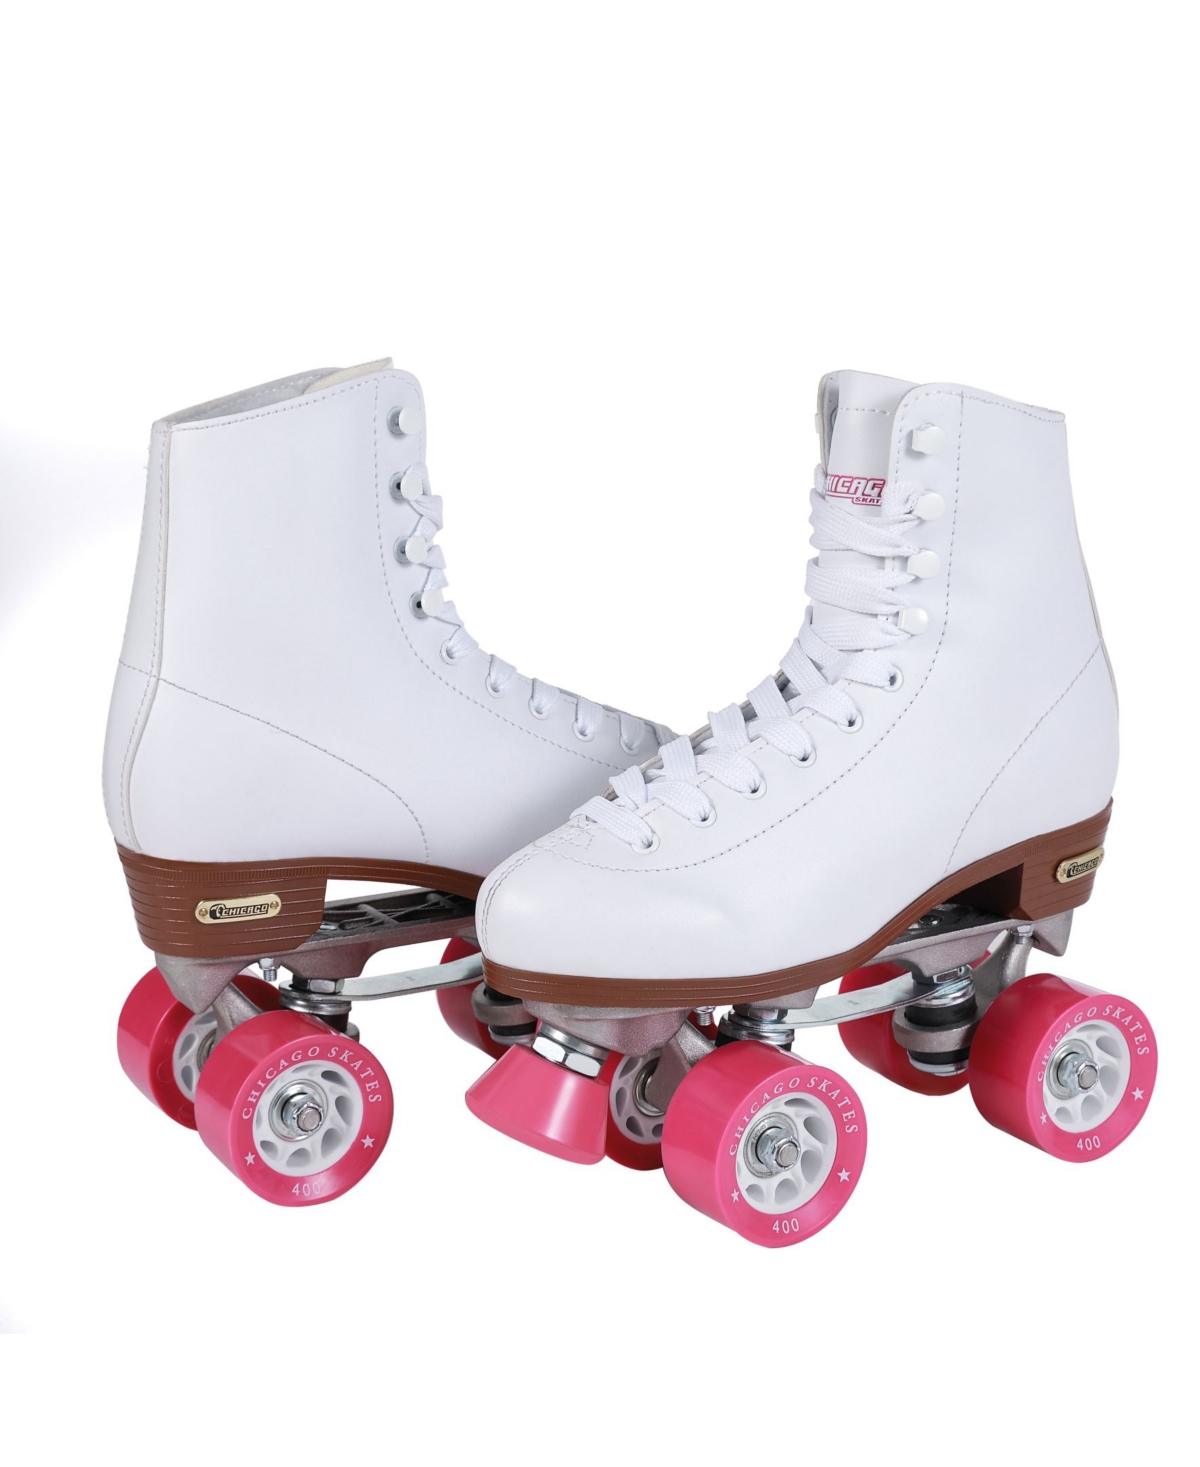 Women's Rink Roller Skates - Size 8 - White